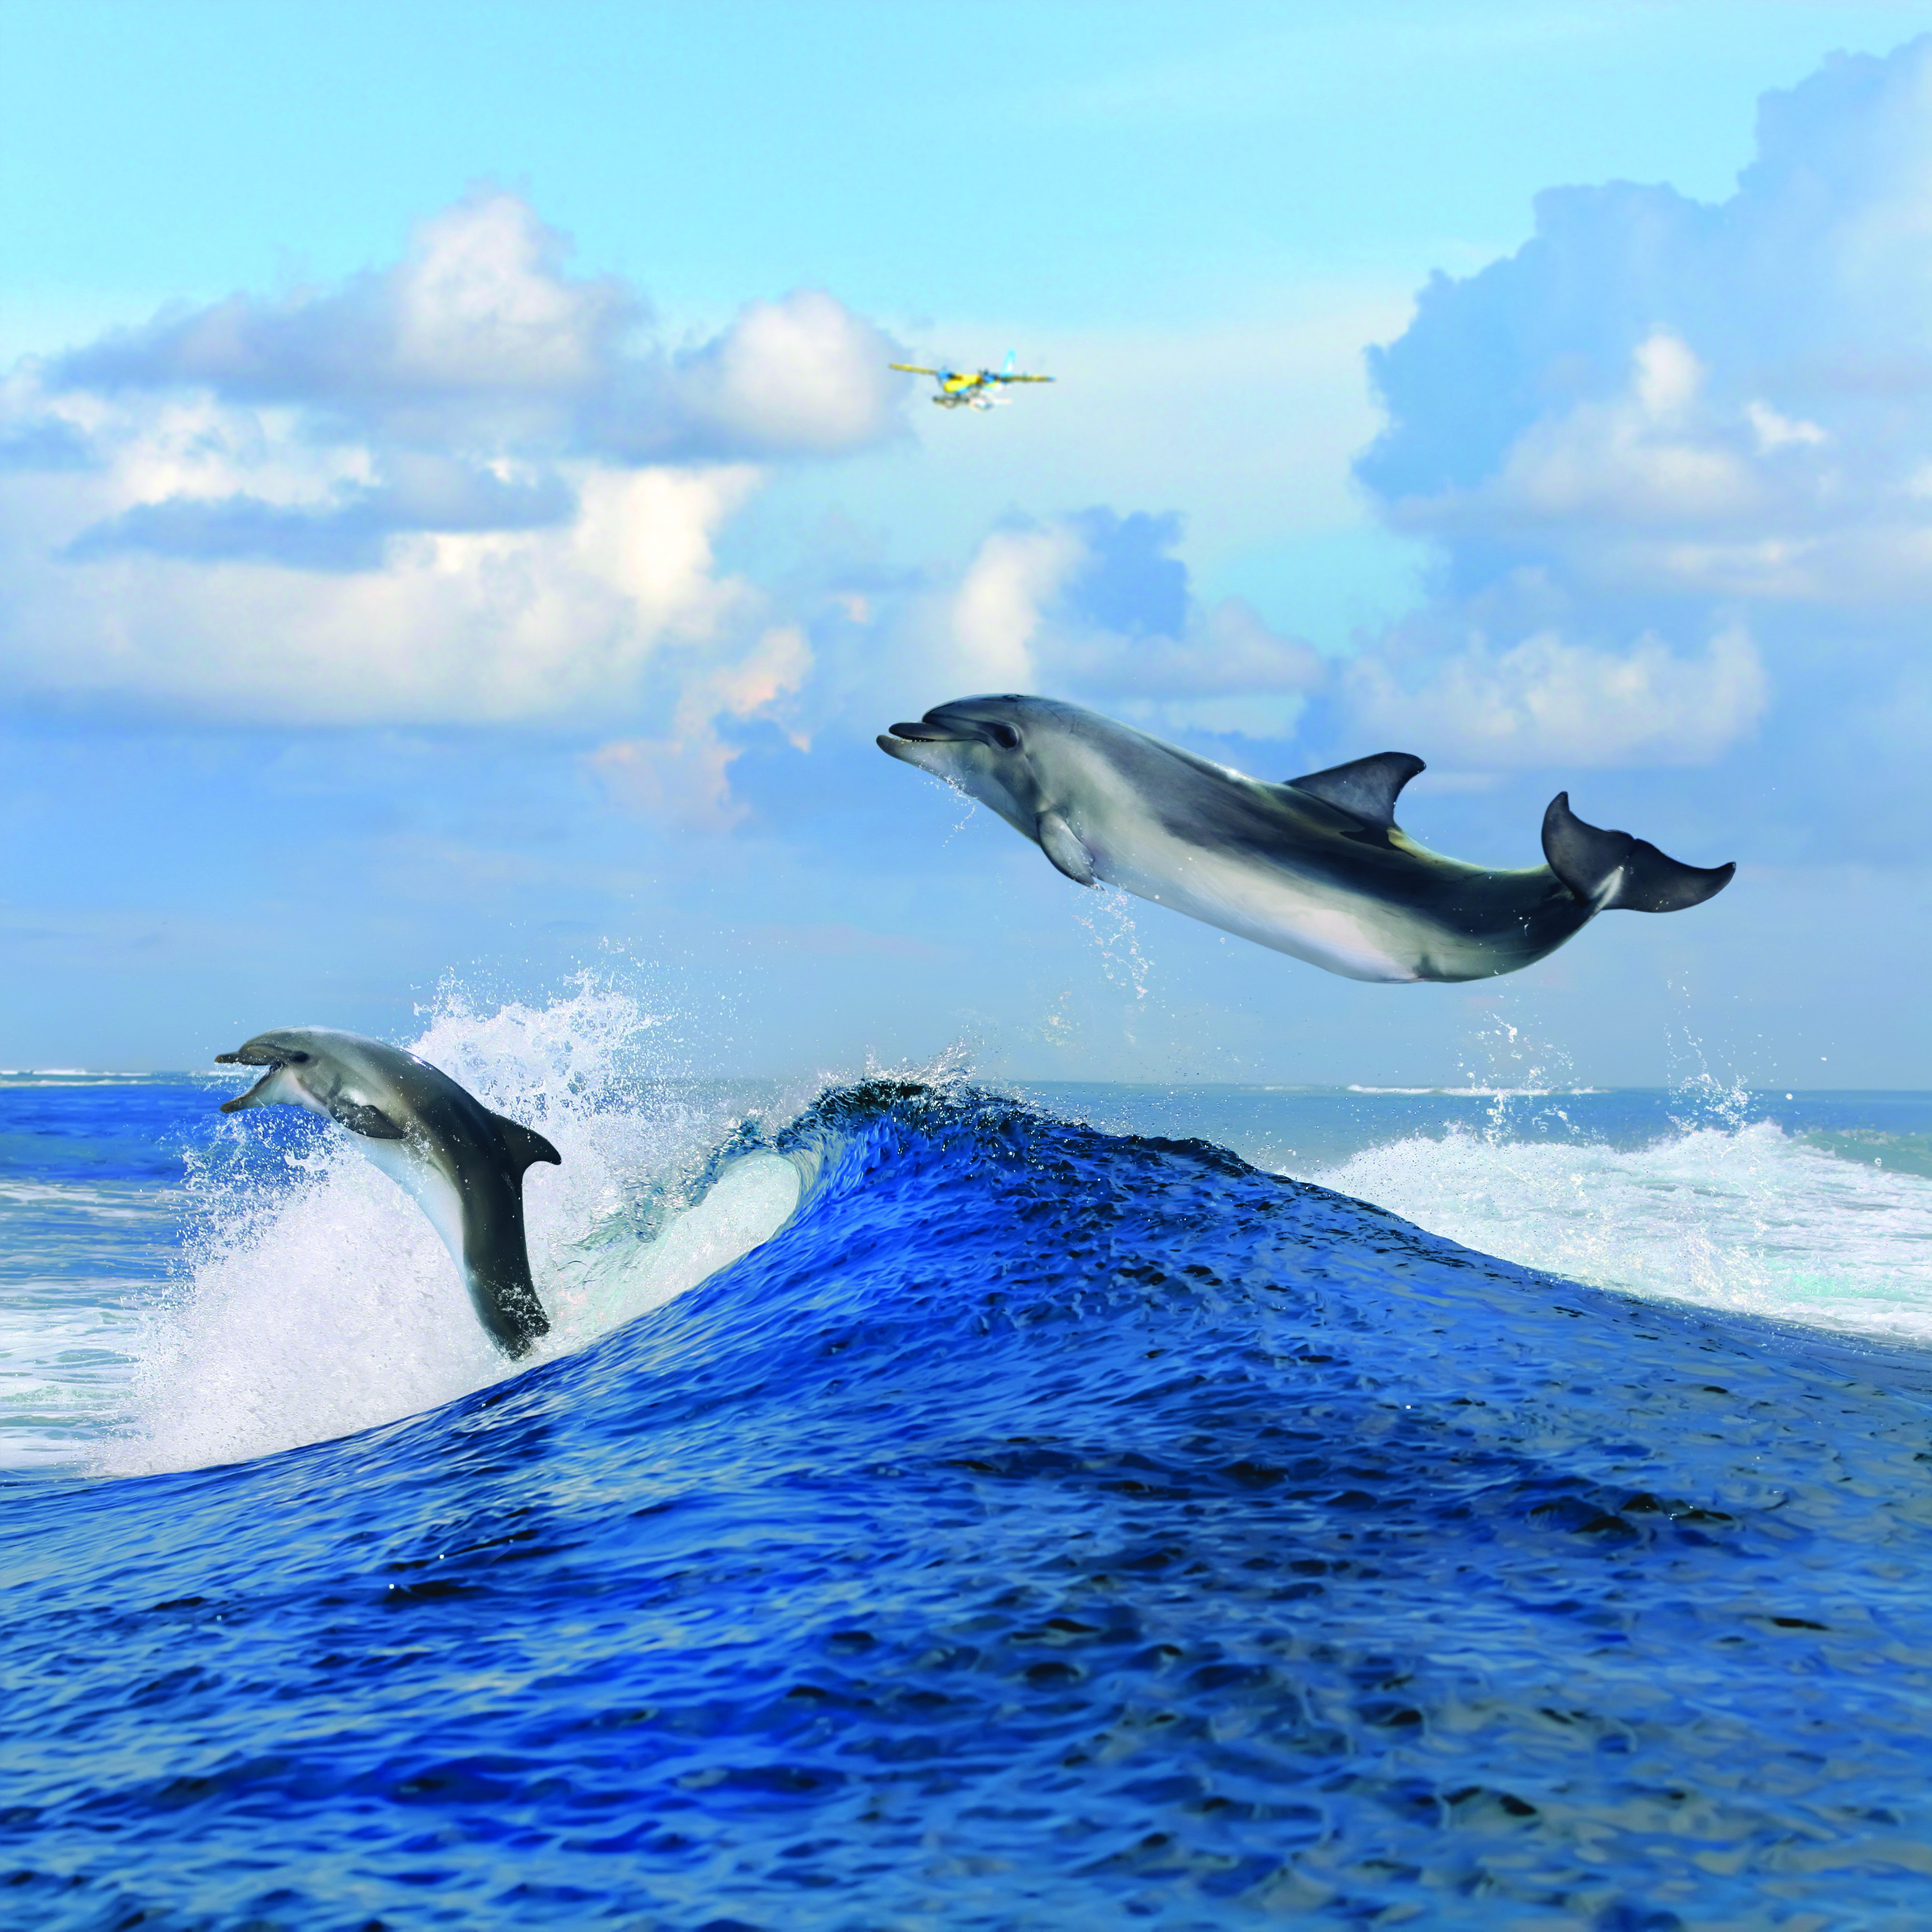 عکس با کیفیت بسیار زیبا دو دلفین زیبا در حال پرش از داخل دریا